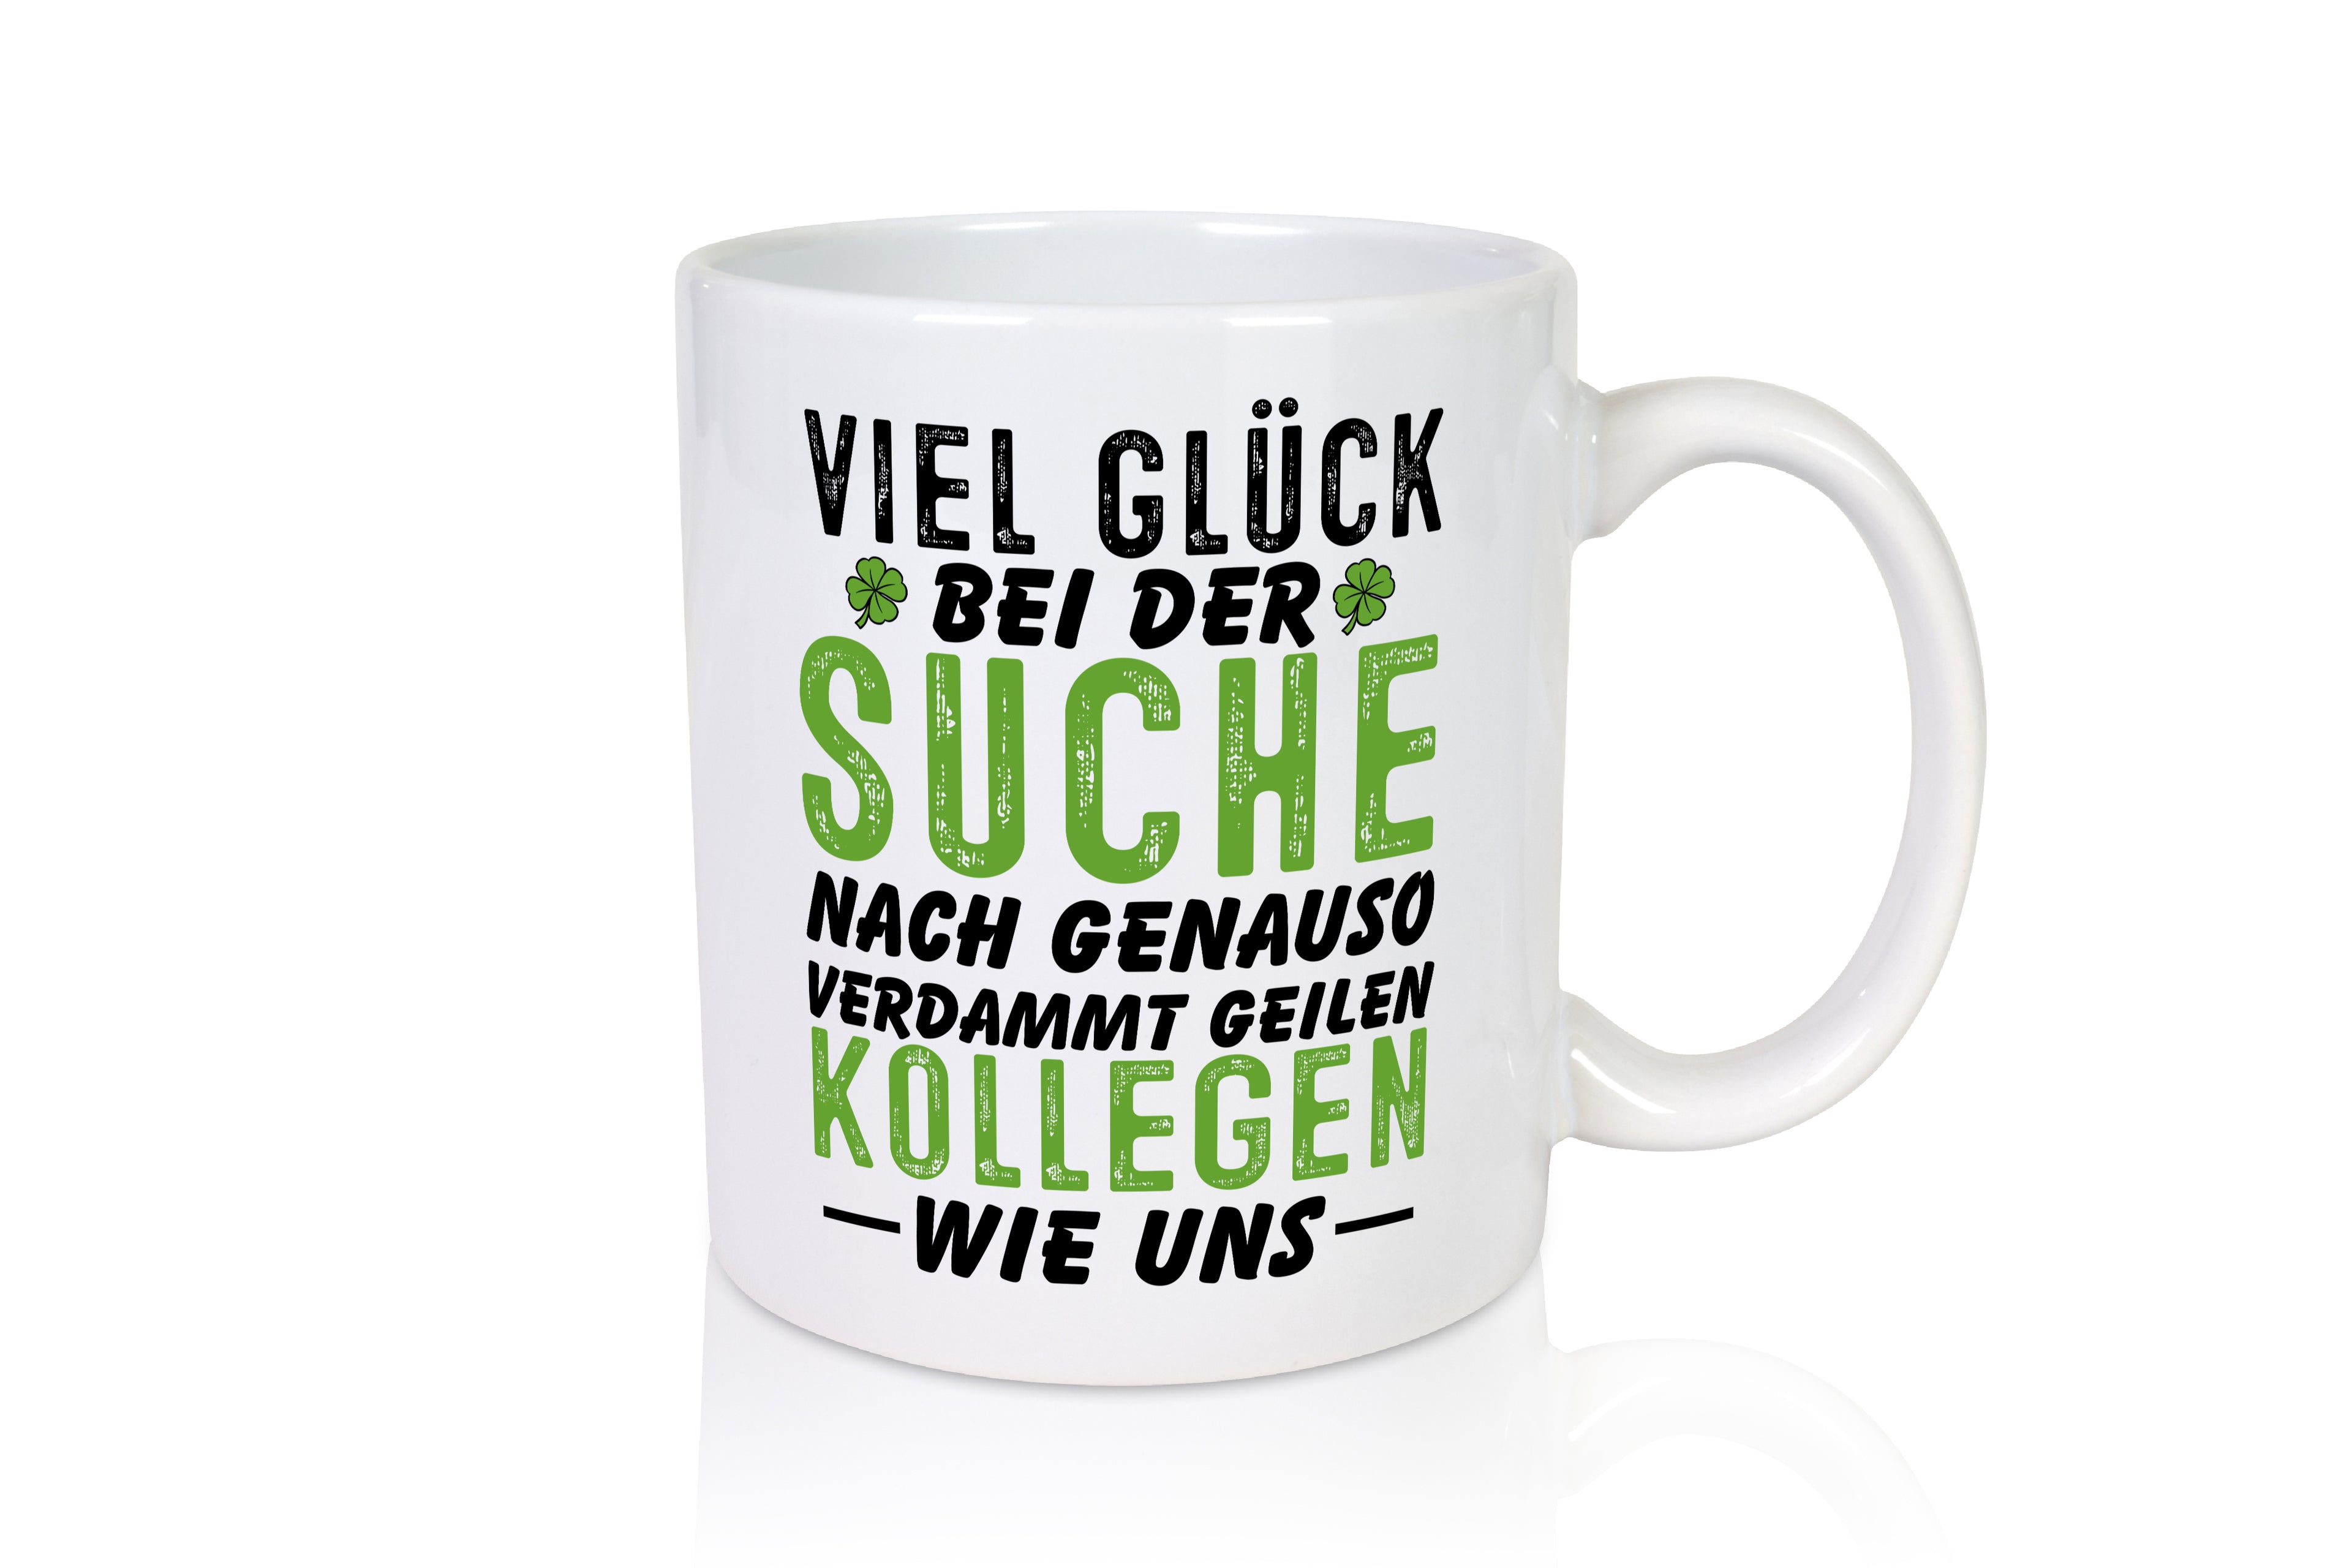 Sehr geile Kollegen - Tasse Weiß - Kaffeetasse / Geschenk / Familie